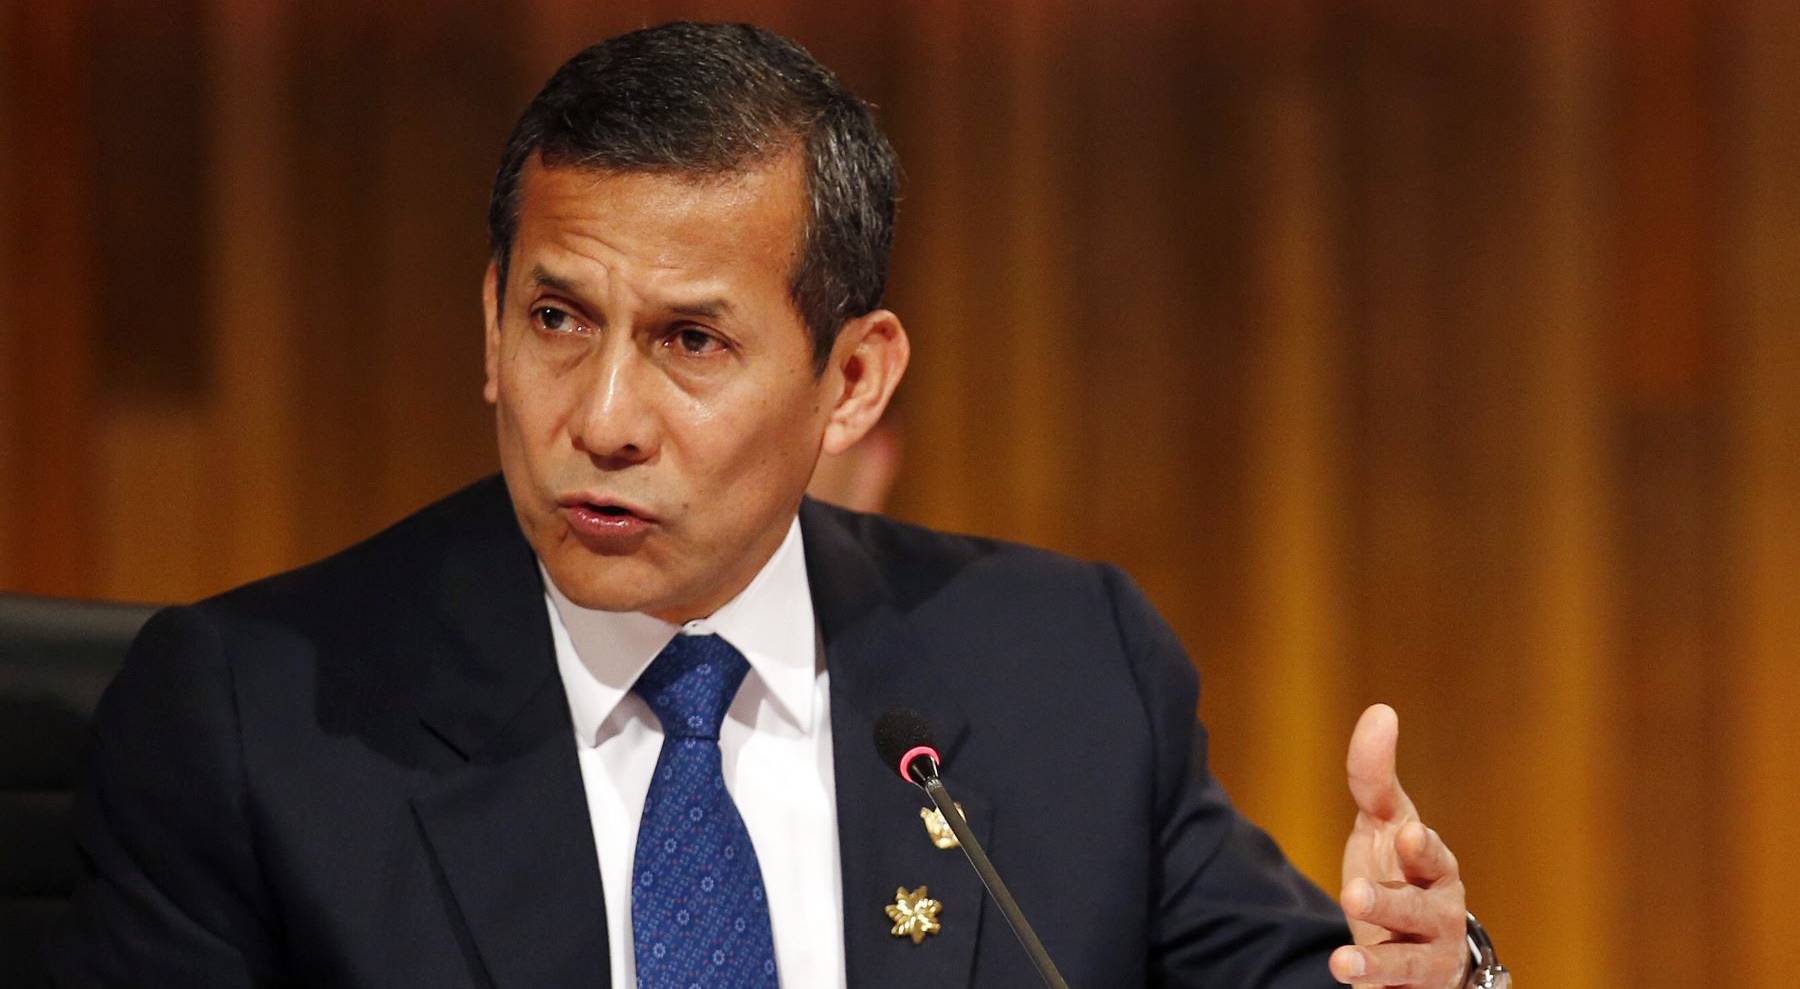 Ollanta Humala: “Democracia es aceptar los resultados y asumir el rol que les toca por decisión popular”